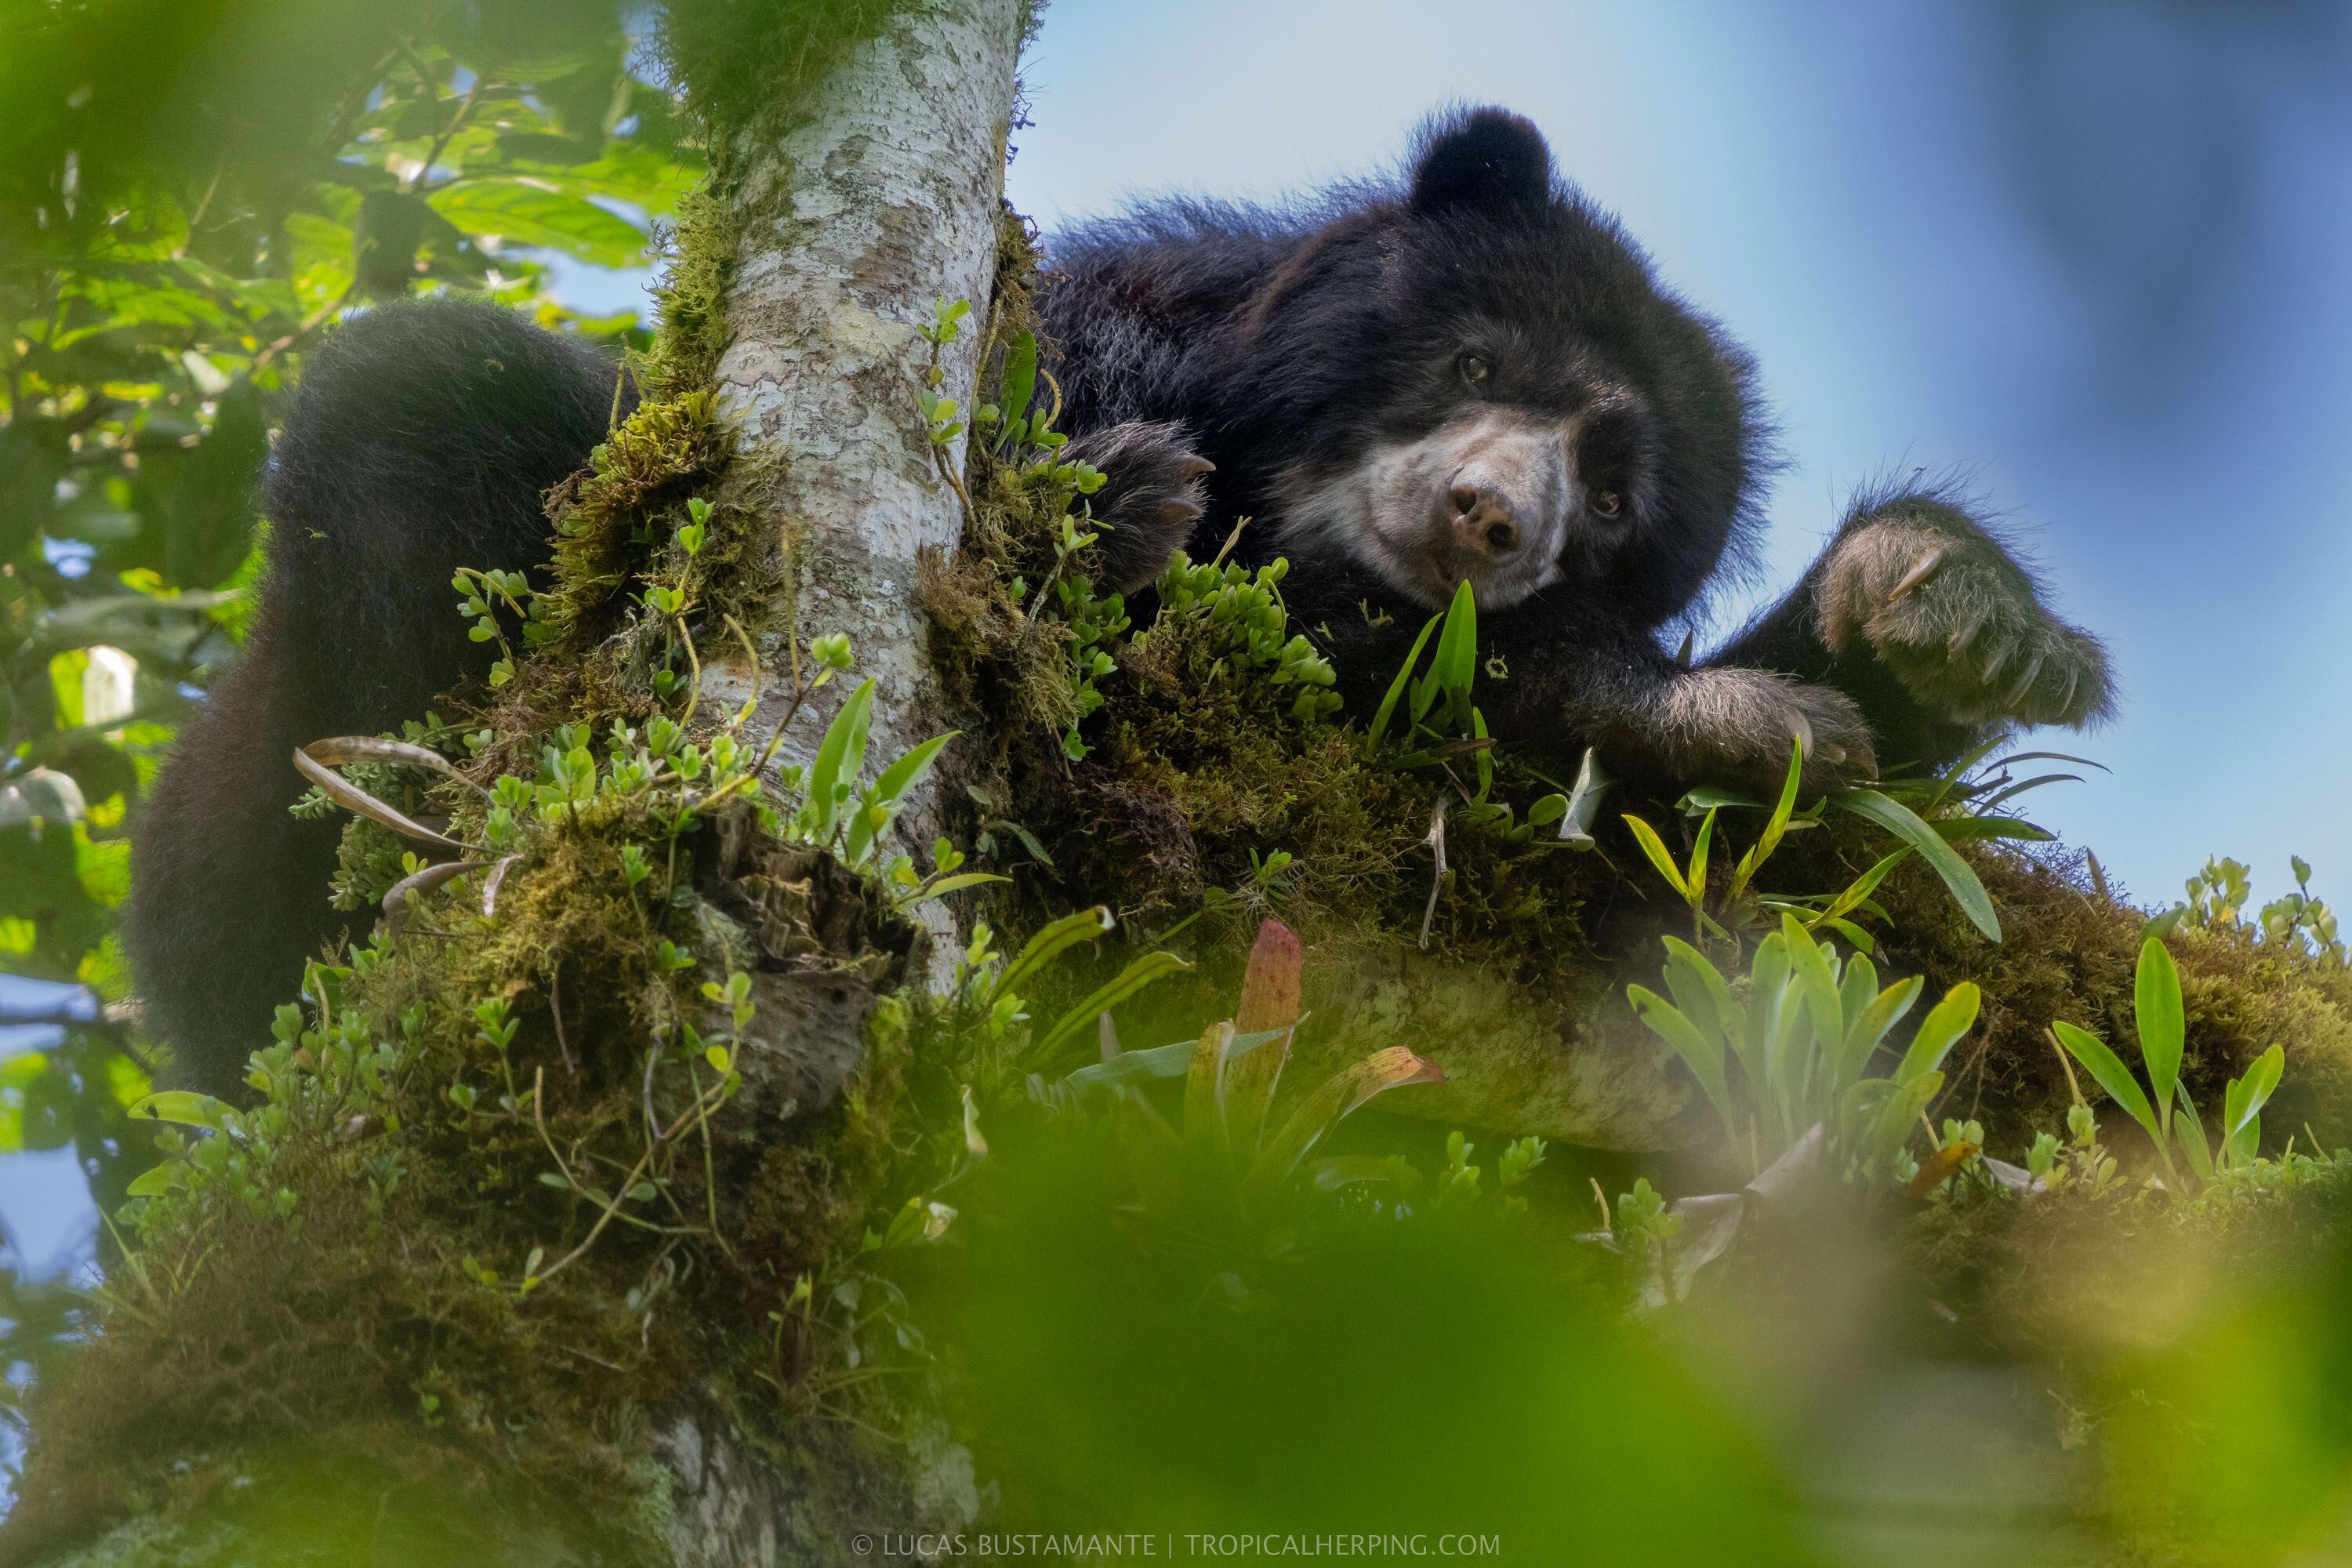 Fotografía de un oso de anteojos, en su hábitat, tomada por Lucas Bustamante, fotógrafo y biólogo ecuatoriano.